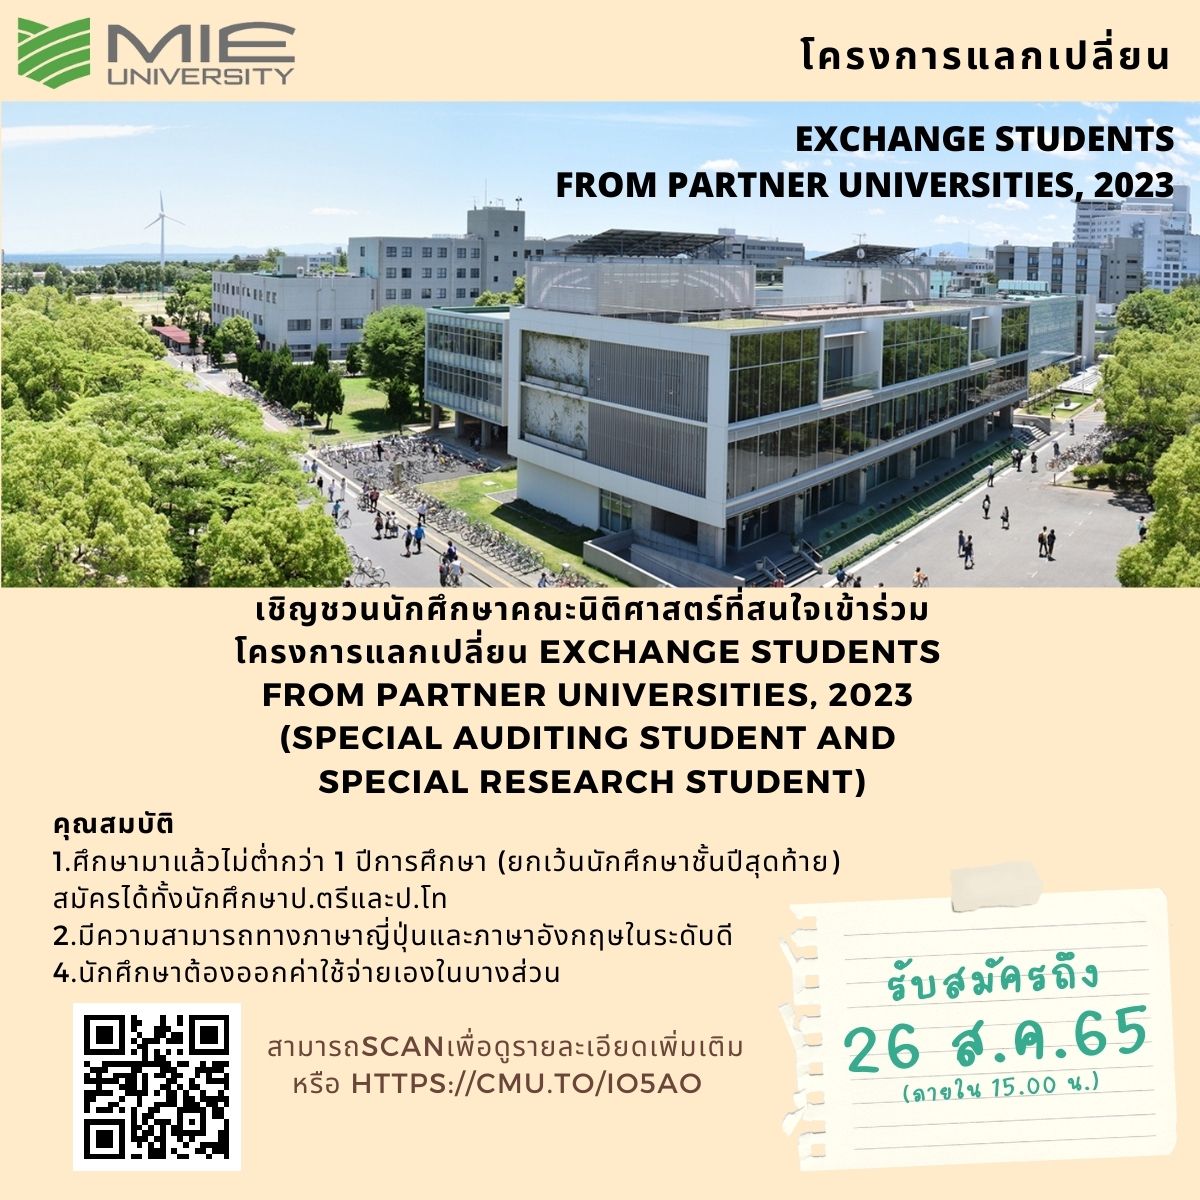 ประชาสัมพันธ์โครงการแลกเปลี่ยน MIE University April 2023 (ปิดรับสมัคร 26 สิงหาคม 65)